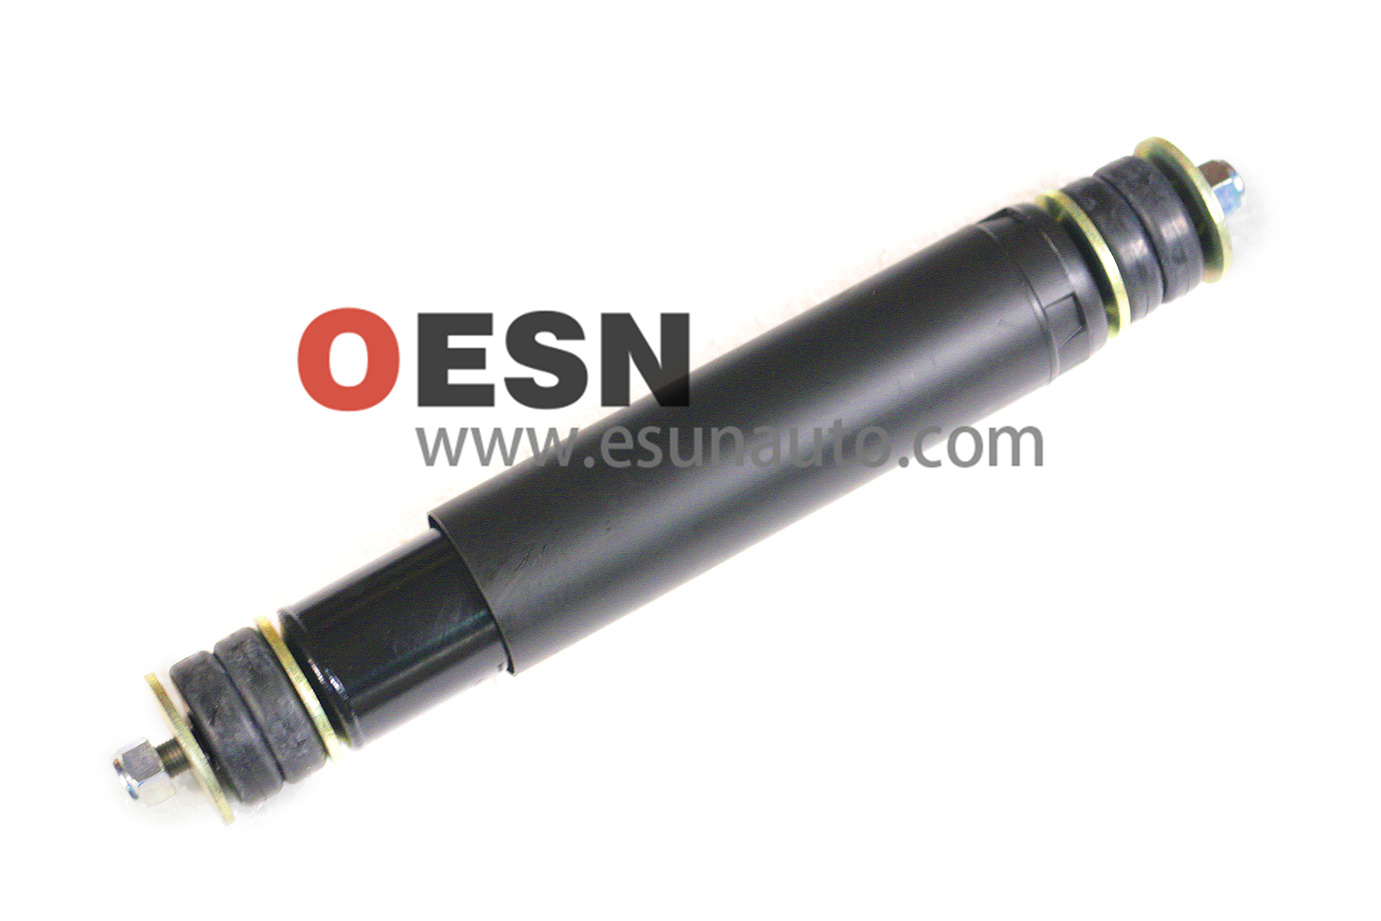 Shock absorber rear  ESN80002  OEM5516300260